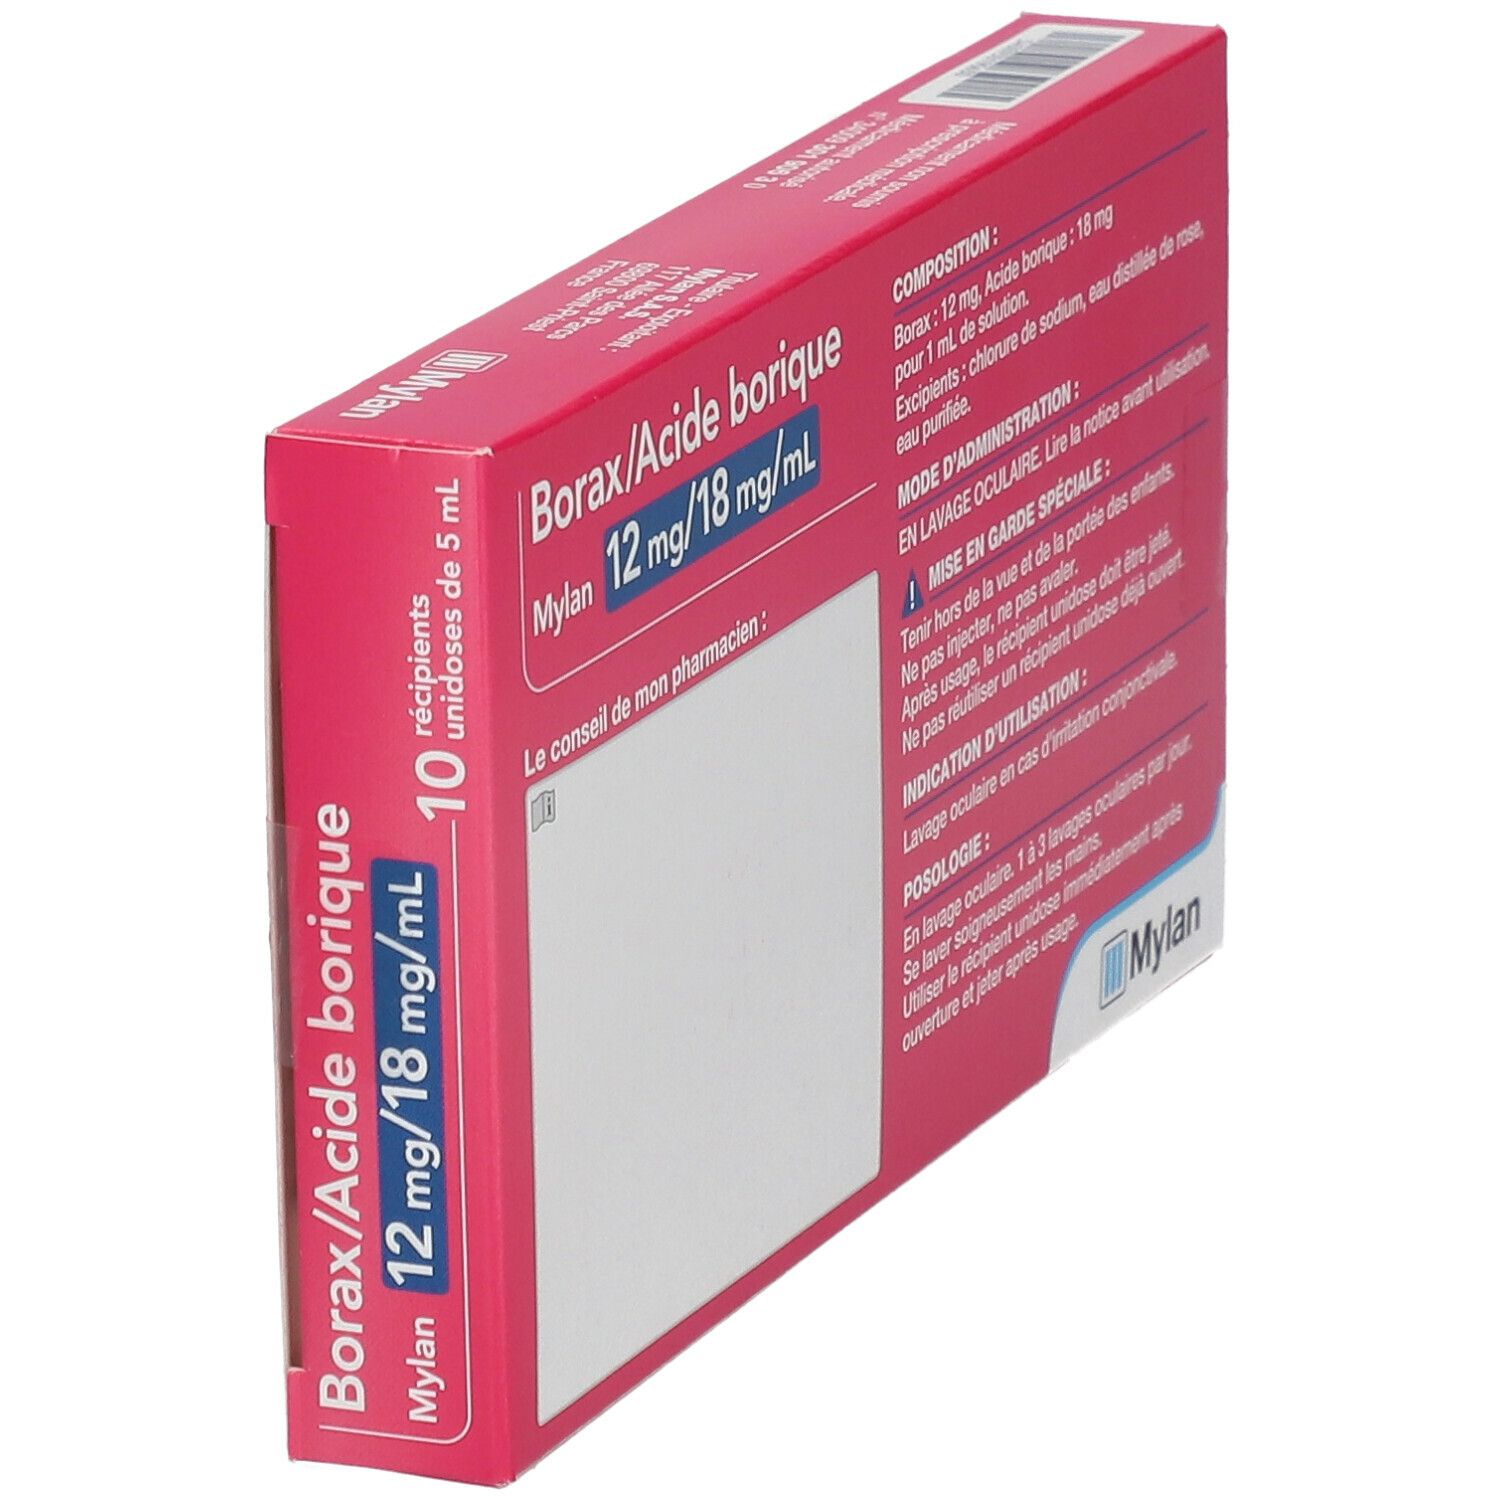 Borax/Acide Borique 12mg/18mg/ml Viatris - irritations conjonctivales